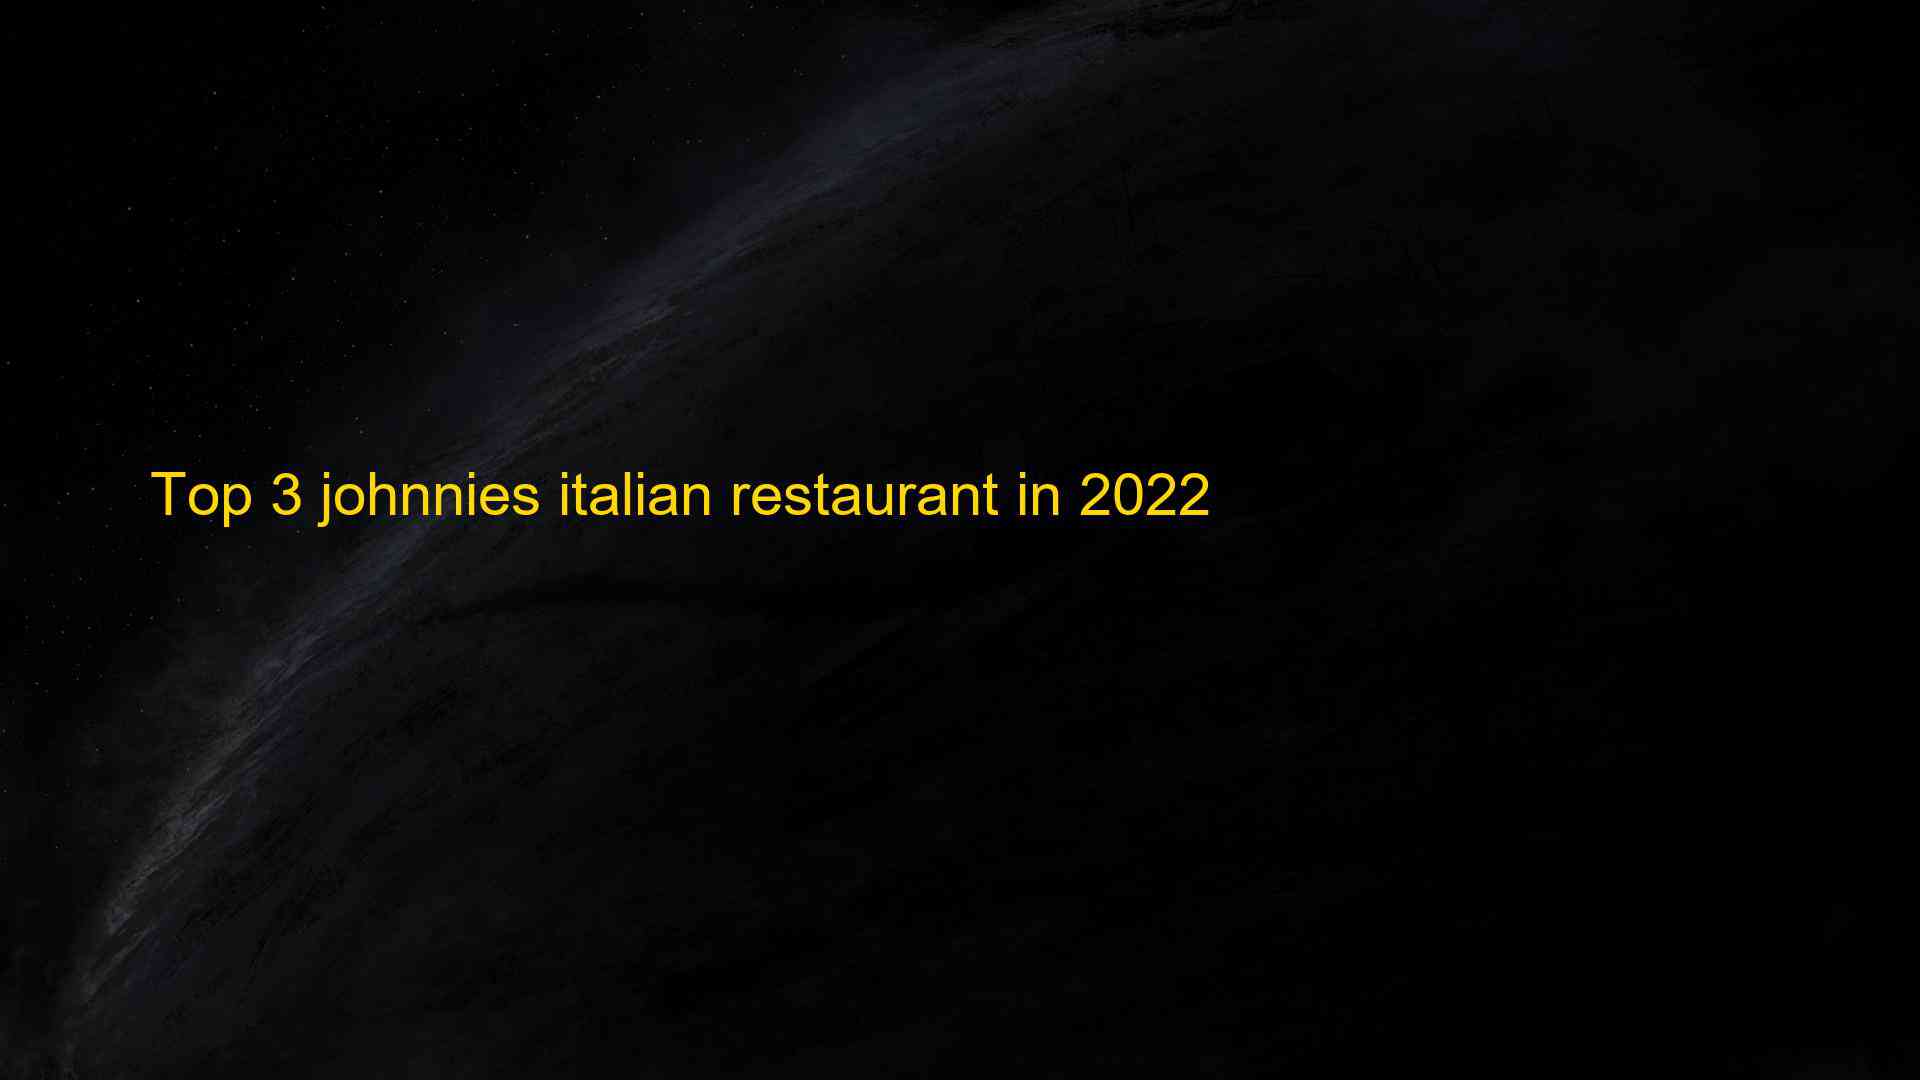 Top 3 johnnies italian restaurant in 2022 1662829381